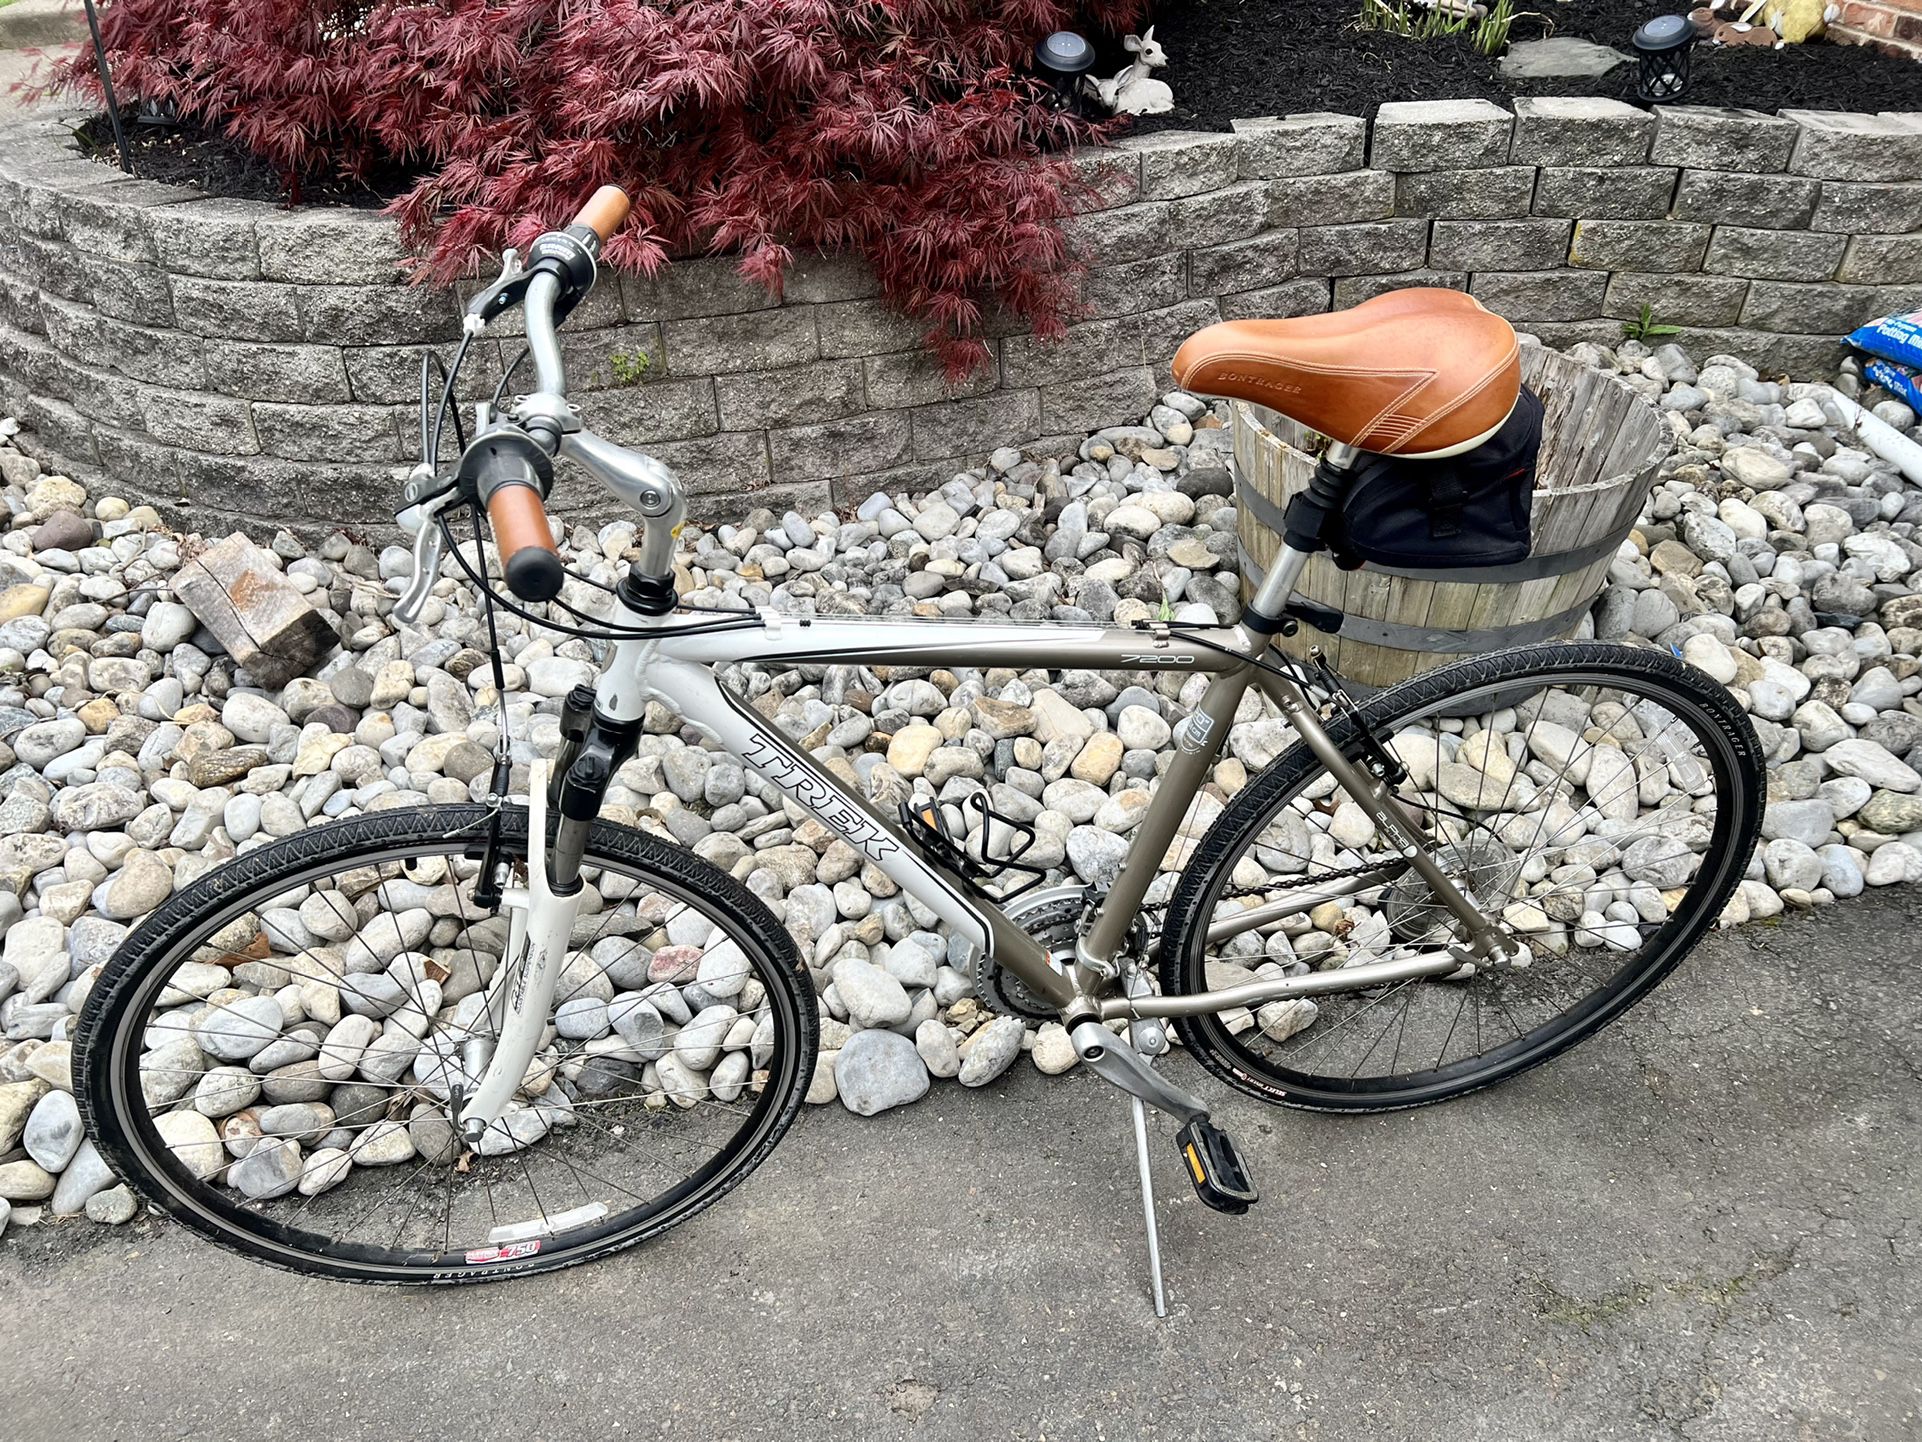 Trek bicycle 7200